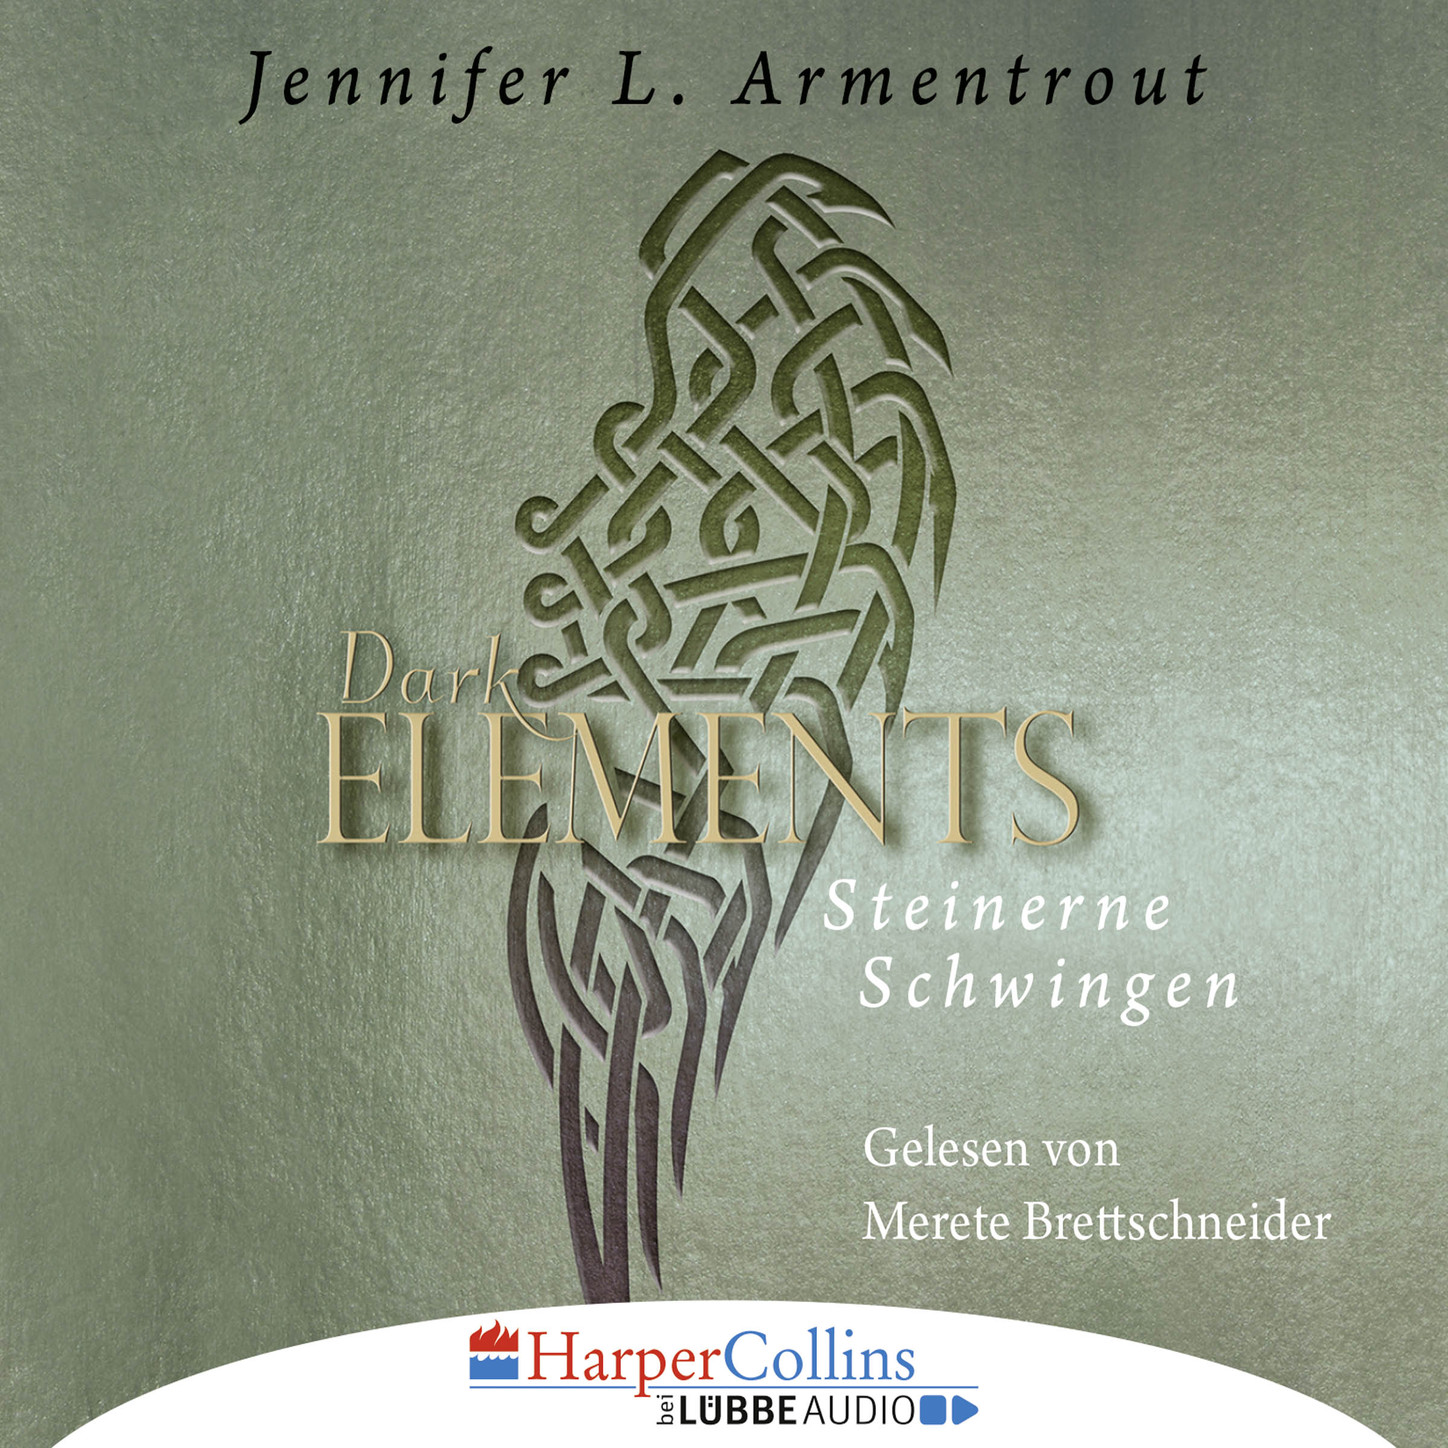 Скачать Steinerne Schwingen - Dark Element 1 - Jennifer L. Armentrout